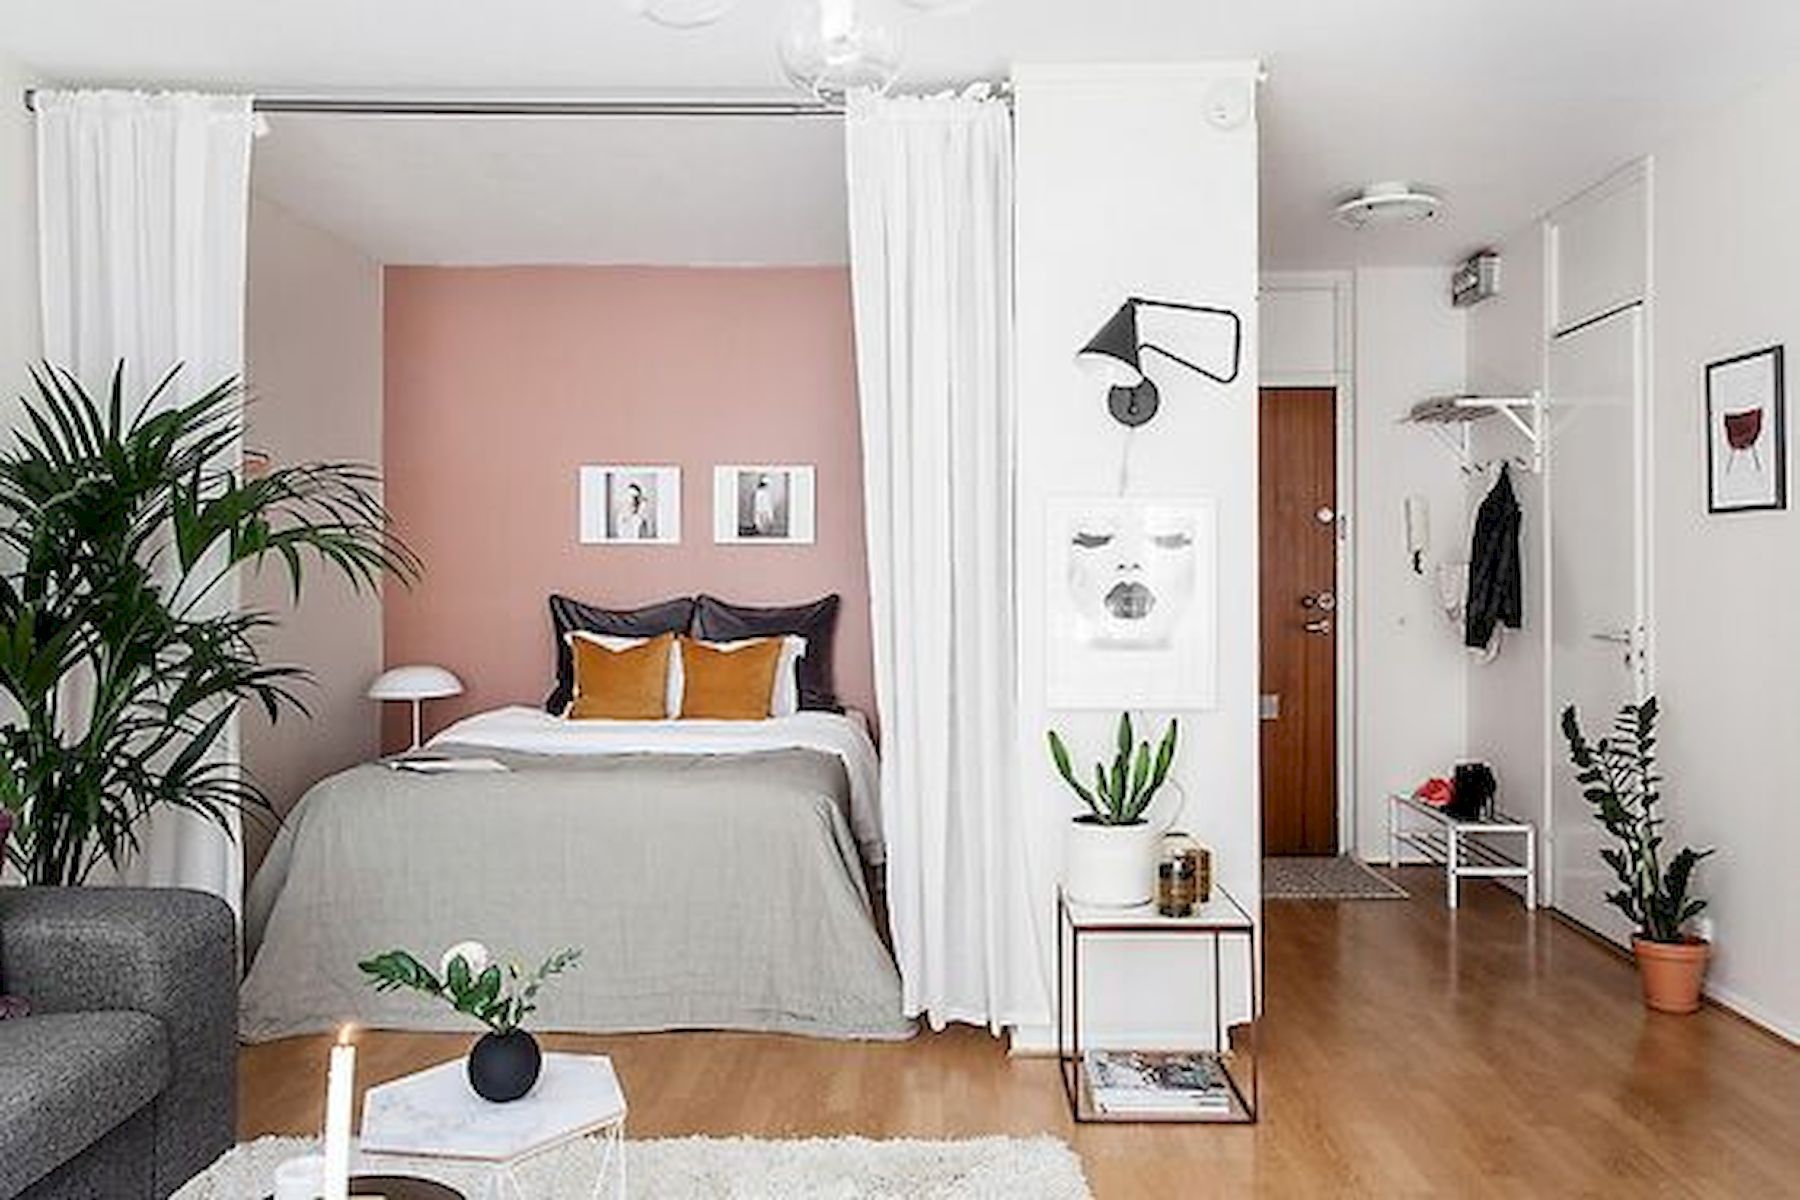 40 Favorite Studio Apartment Room Dividers Curtains Design Ideas and Decor -   16 room decor Apartment design ideas